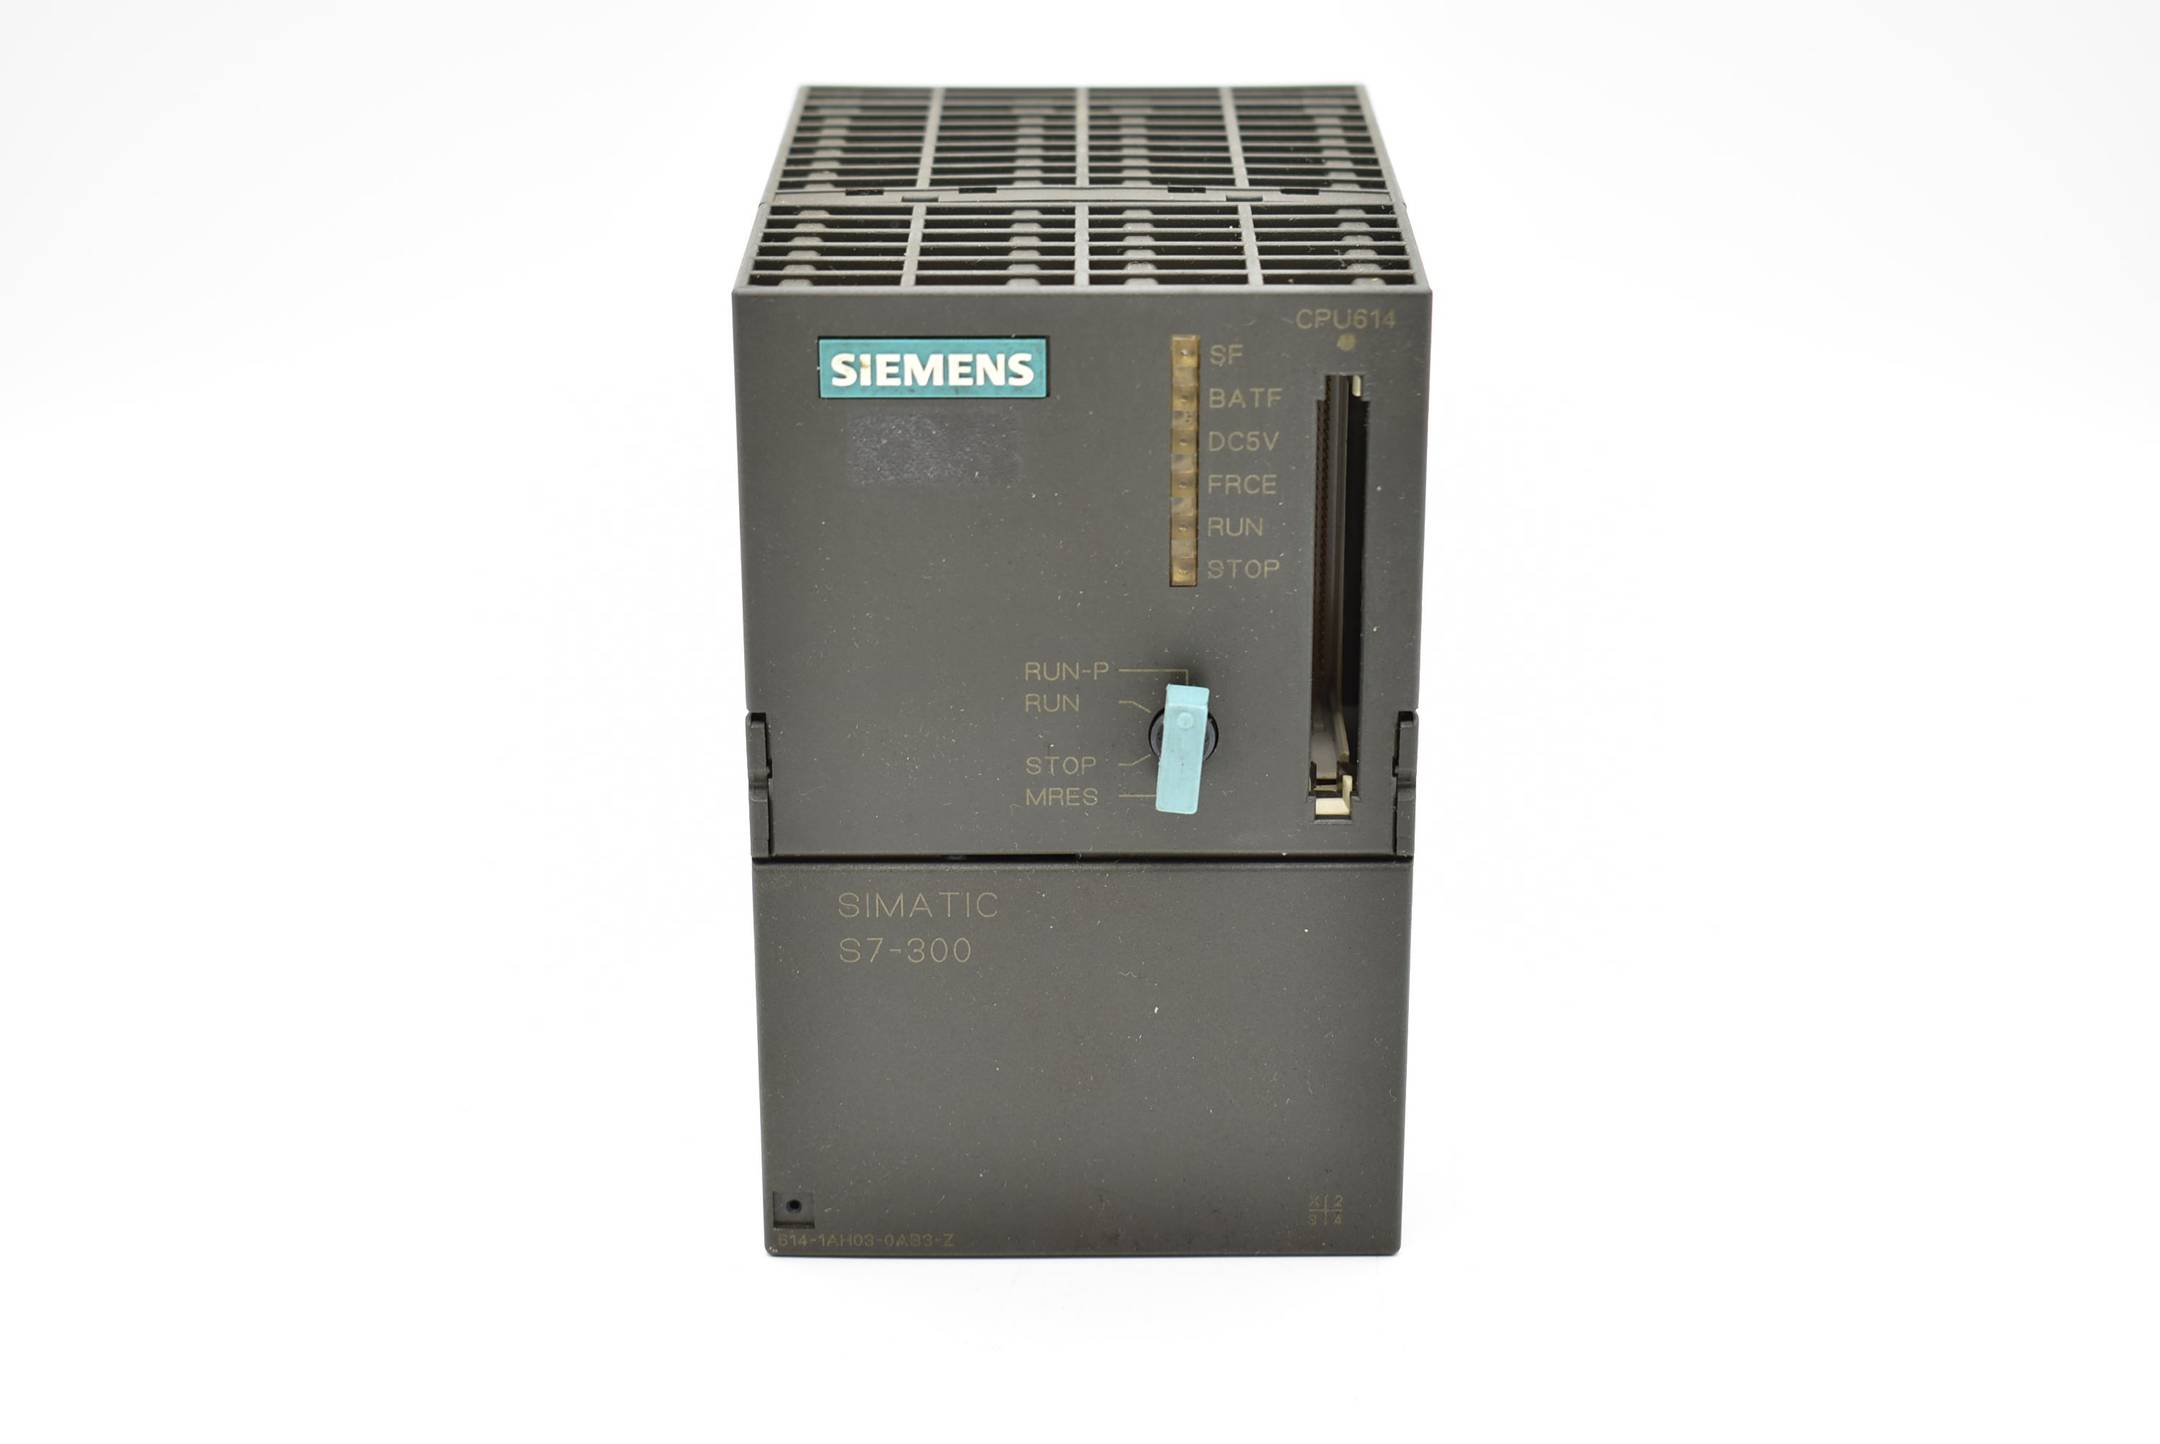 Siemens simatic S7-300 CPU614 6ES7614-1AH03-0AB3-Z ( 6ES7 614-1AH03-0AB3-Z ) E.1